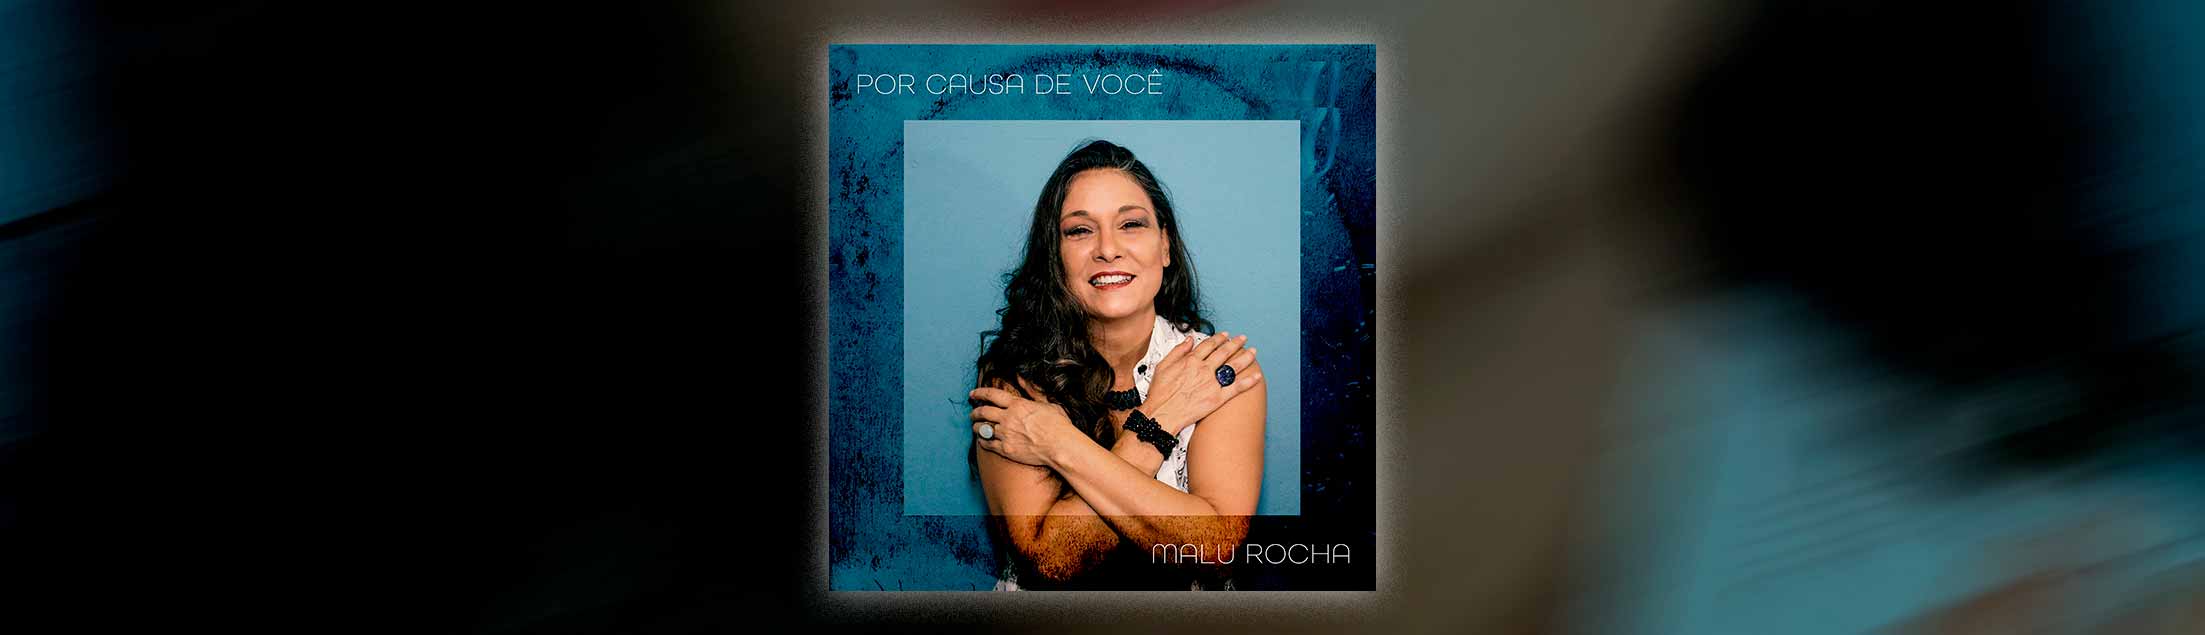 Homenageando Tom Jobim, Malu Rocha divulga single 'Por Causa de Você' via selo Fluve (Som Livre)